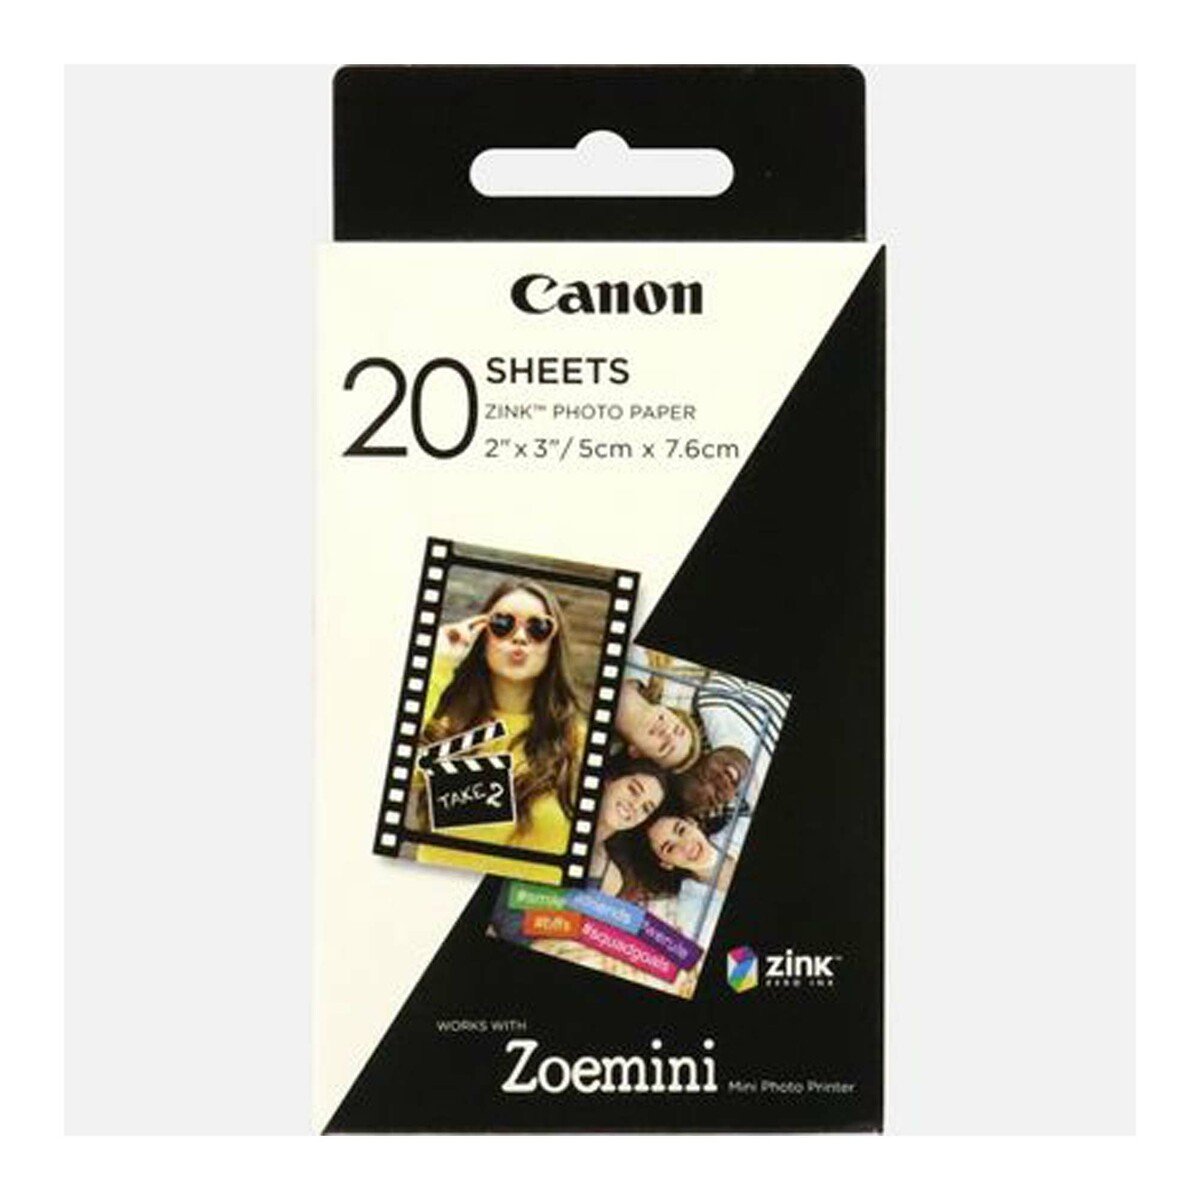 Canon Zink 2"x3" Photo Paper 20s ZP-2030